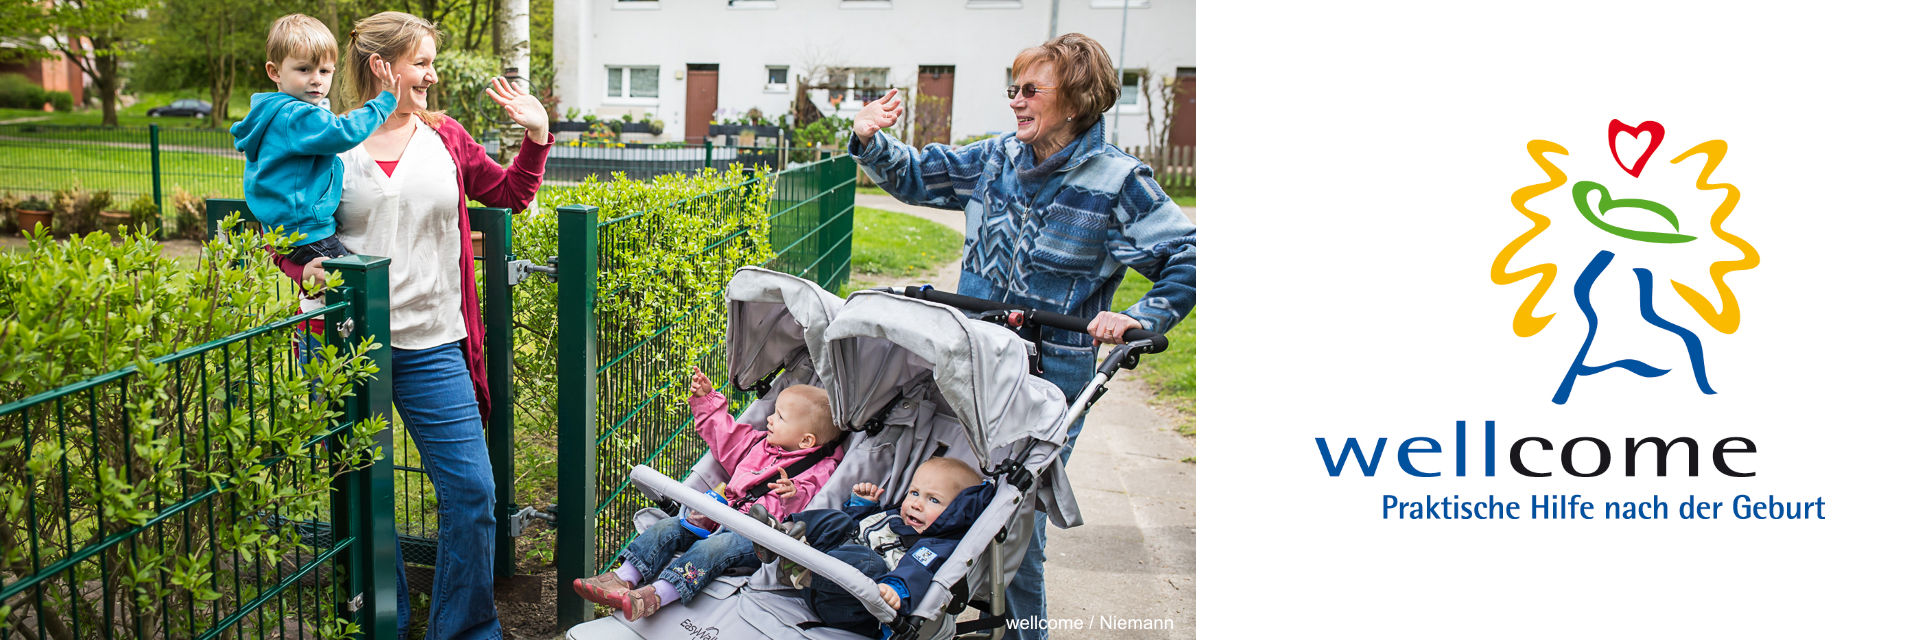 Eine Mutter mit einem Kind auf dem Arm winkt einer Seniorin, die einen Zwillings-Kinderwagen schiebt